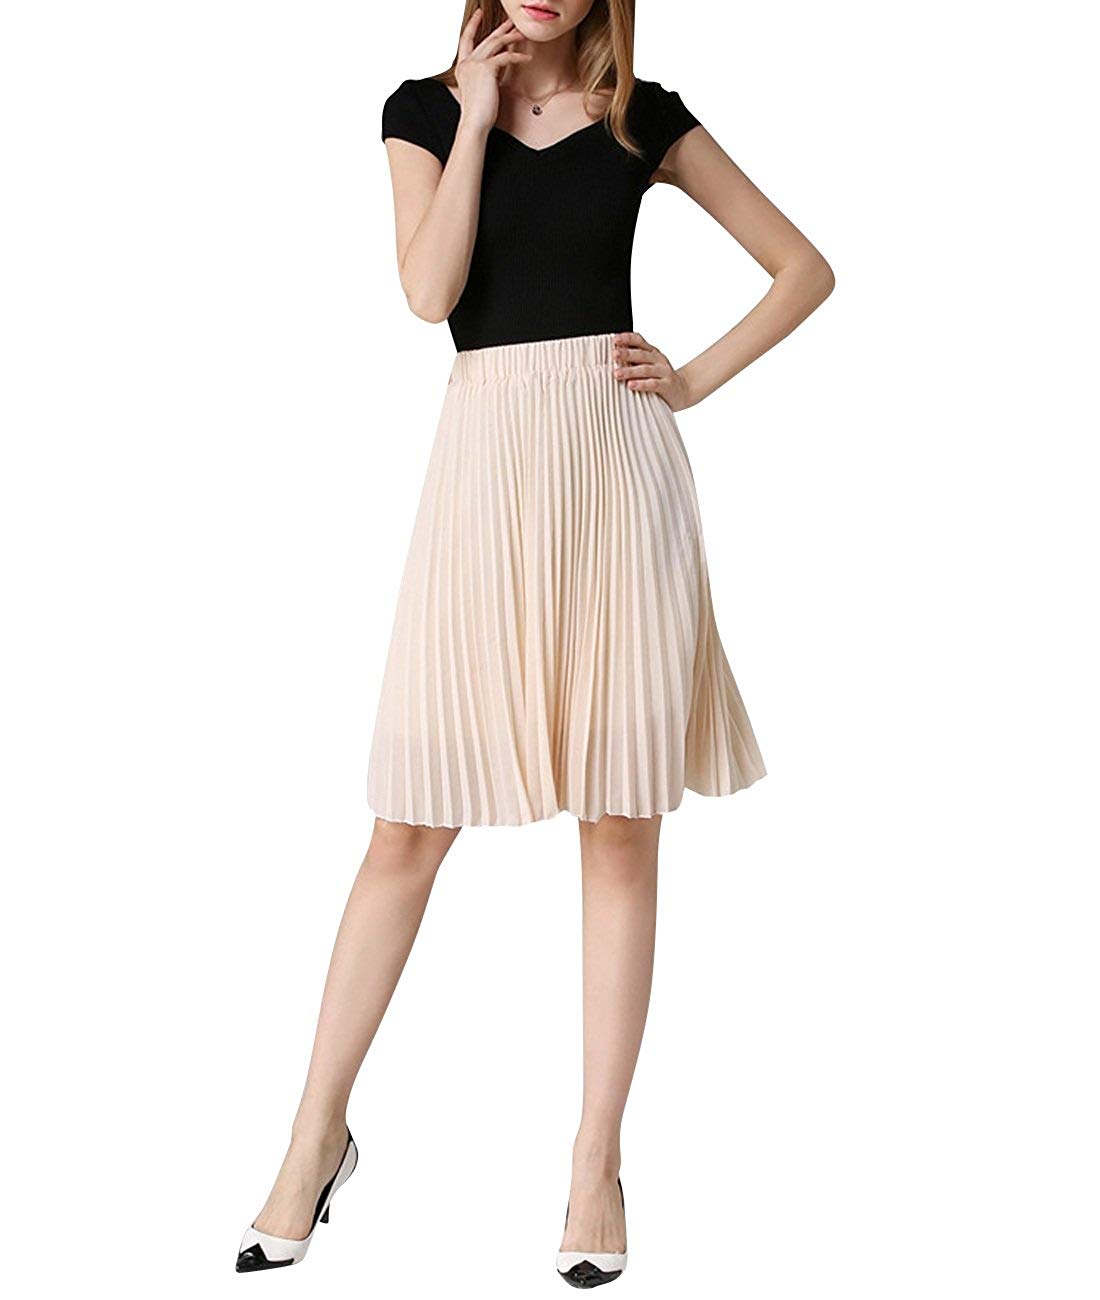 Knee Length Skirts | DressedUpGirl.com